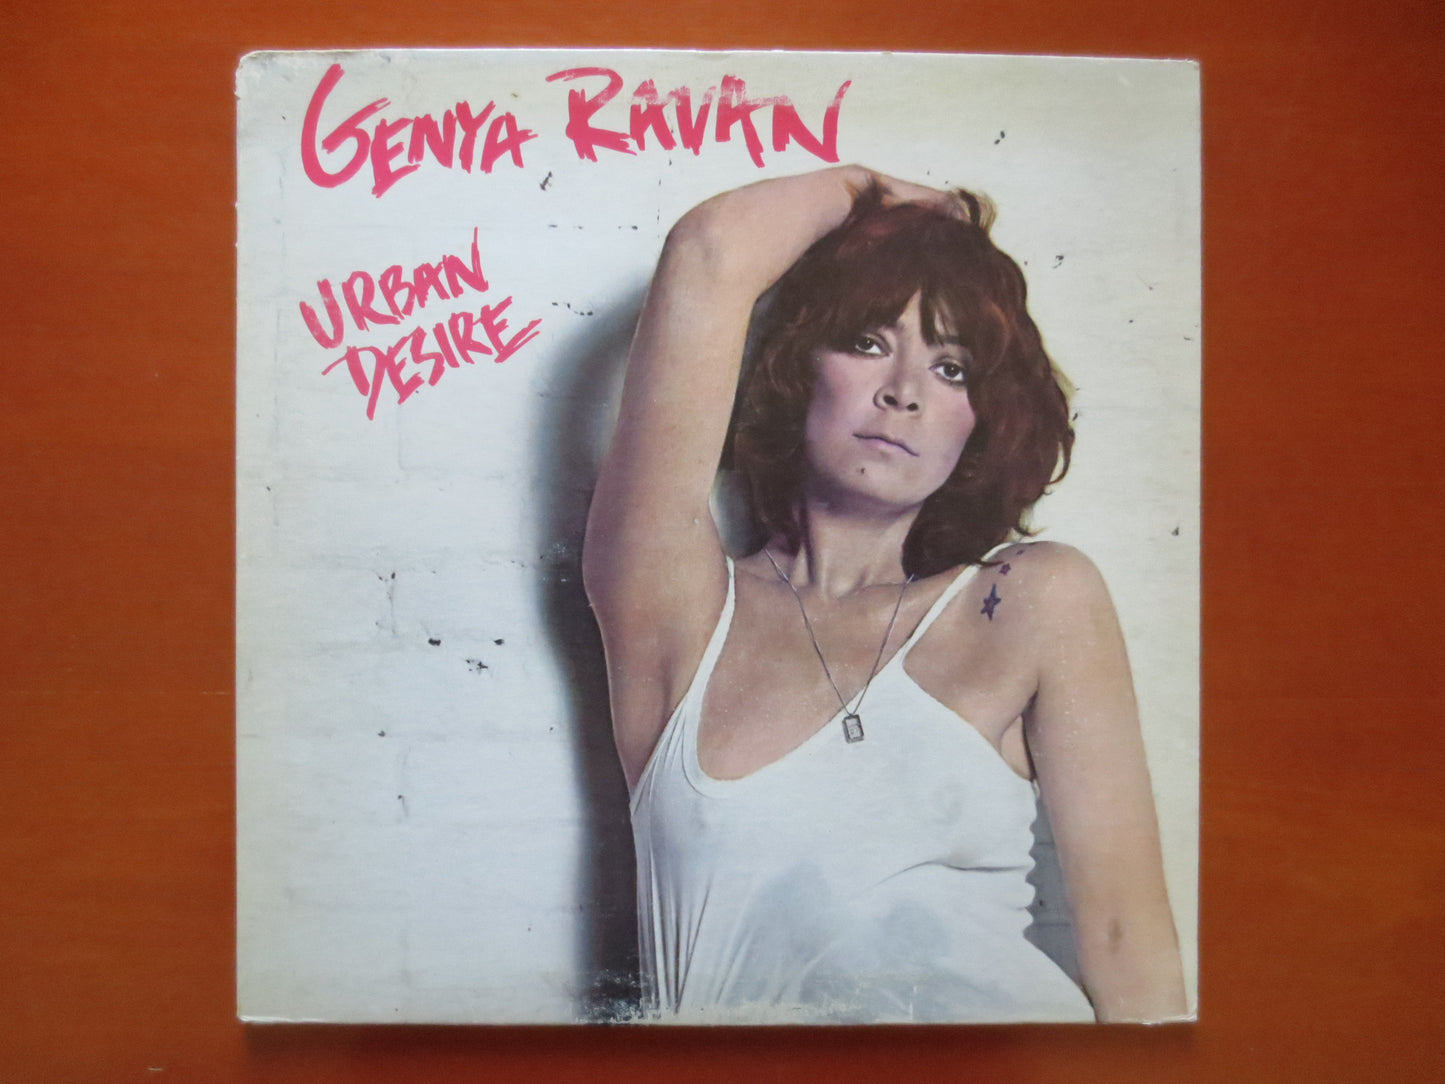 GENYA RAVAN, Urban DESIRE Album, Genya Ravan Album, Genya Ravan Vinyl, Genya Ravan Lp, Vintage Vinyl, 1978 Records